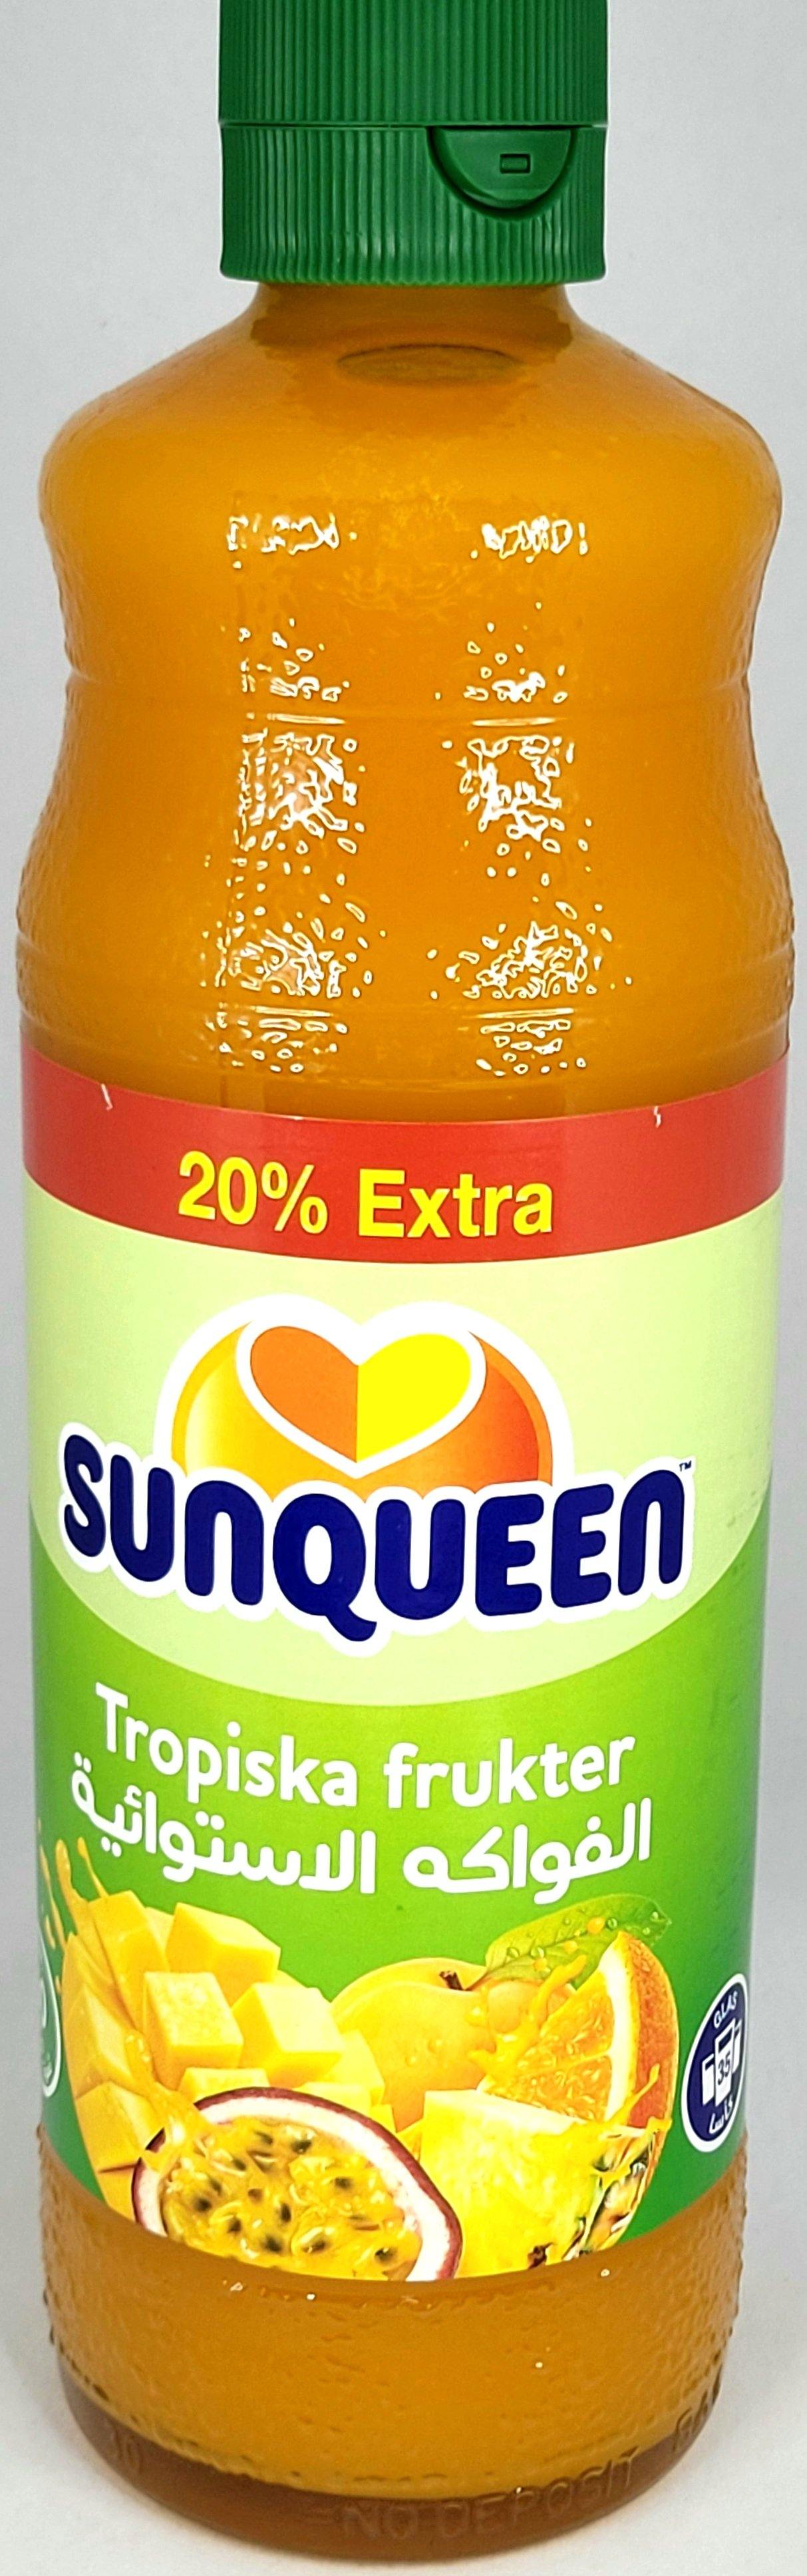 SunQueen Tropical Fruits - Arabian Shopping Zone